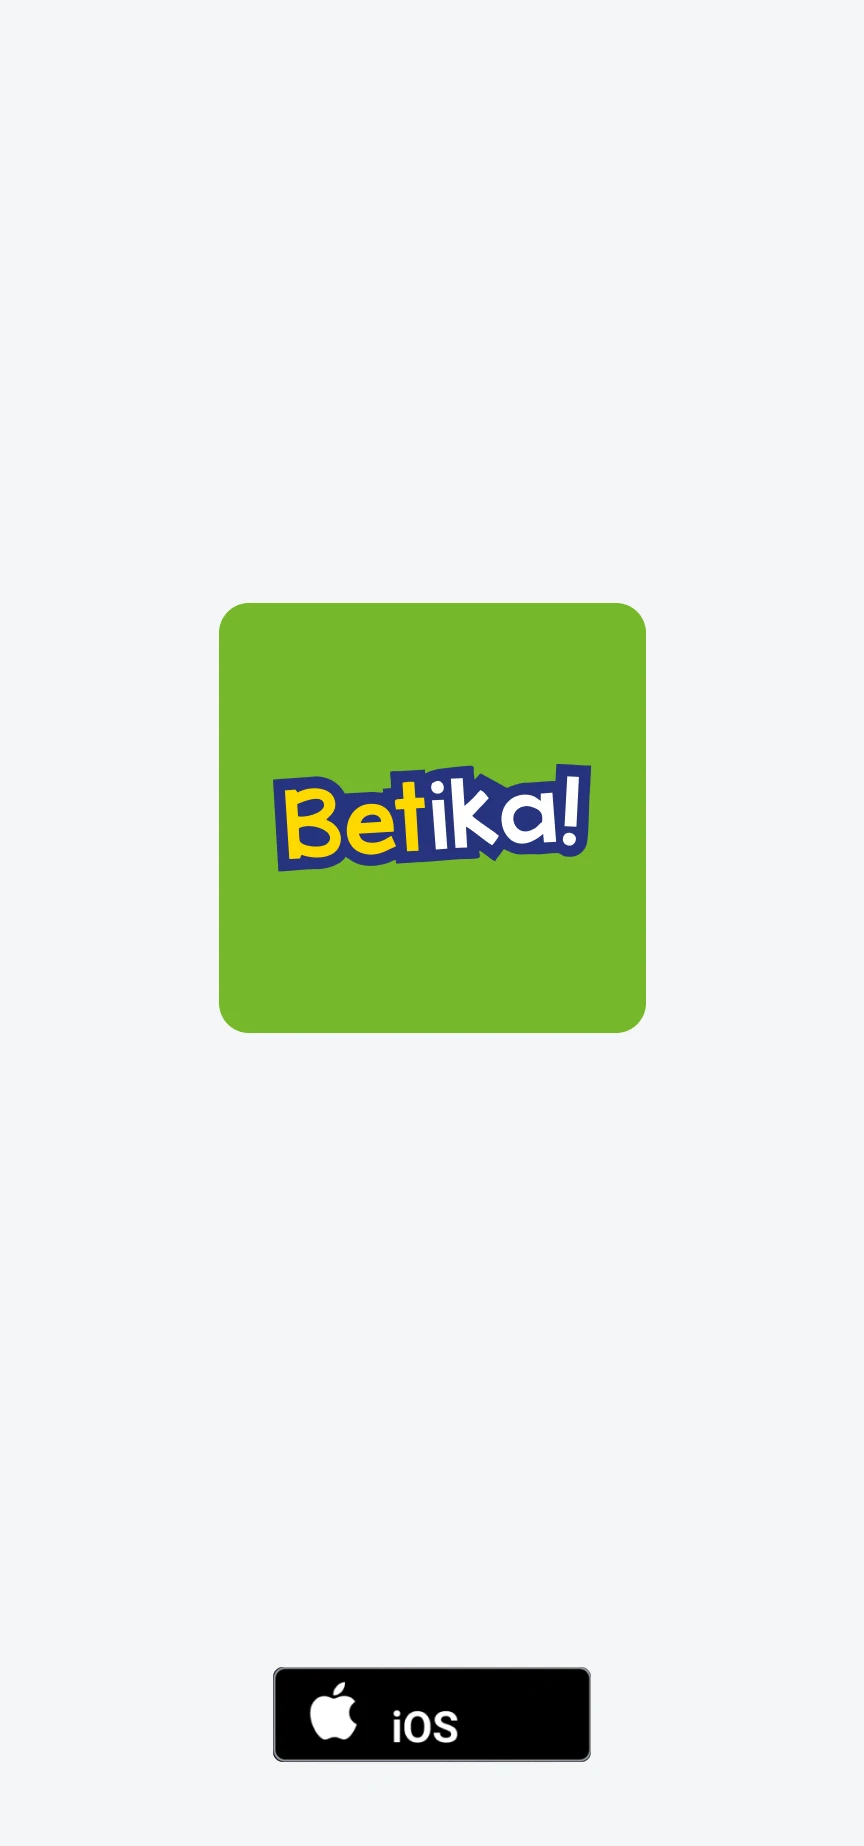 Baixe e instale o aplicativo Betika para iOS.